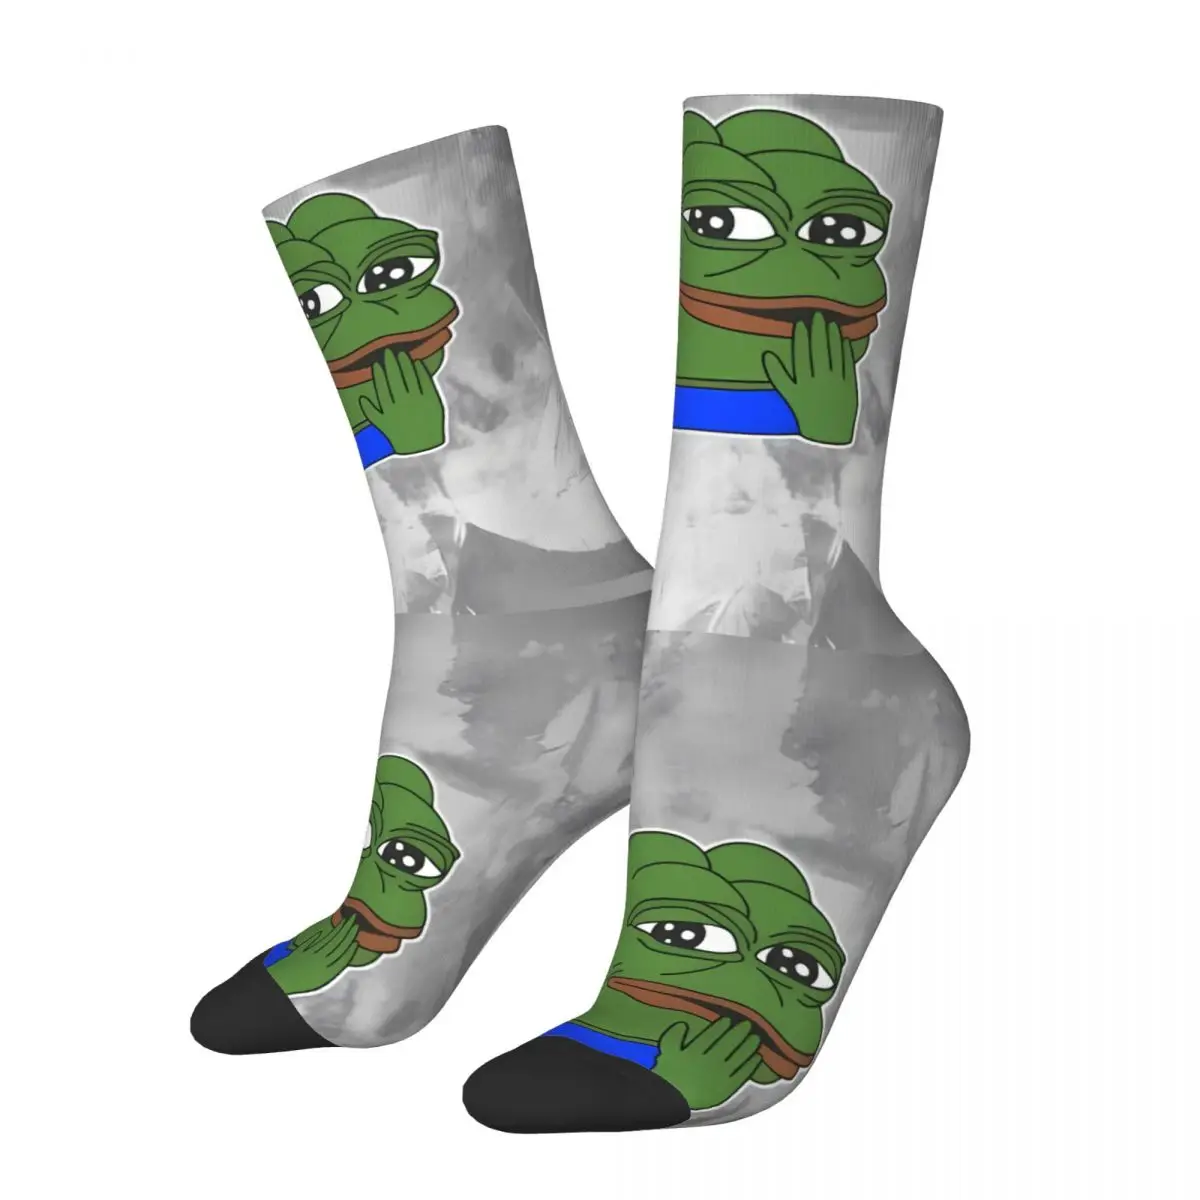 

Забавные зимние носки Pepe The Frog в стиле унисекс, теплые счастливые носки, сумасшедшие носки в уличном стиле